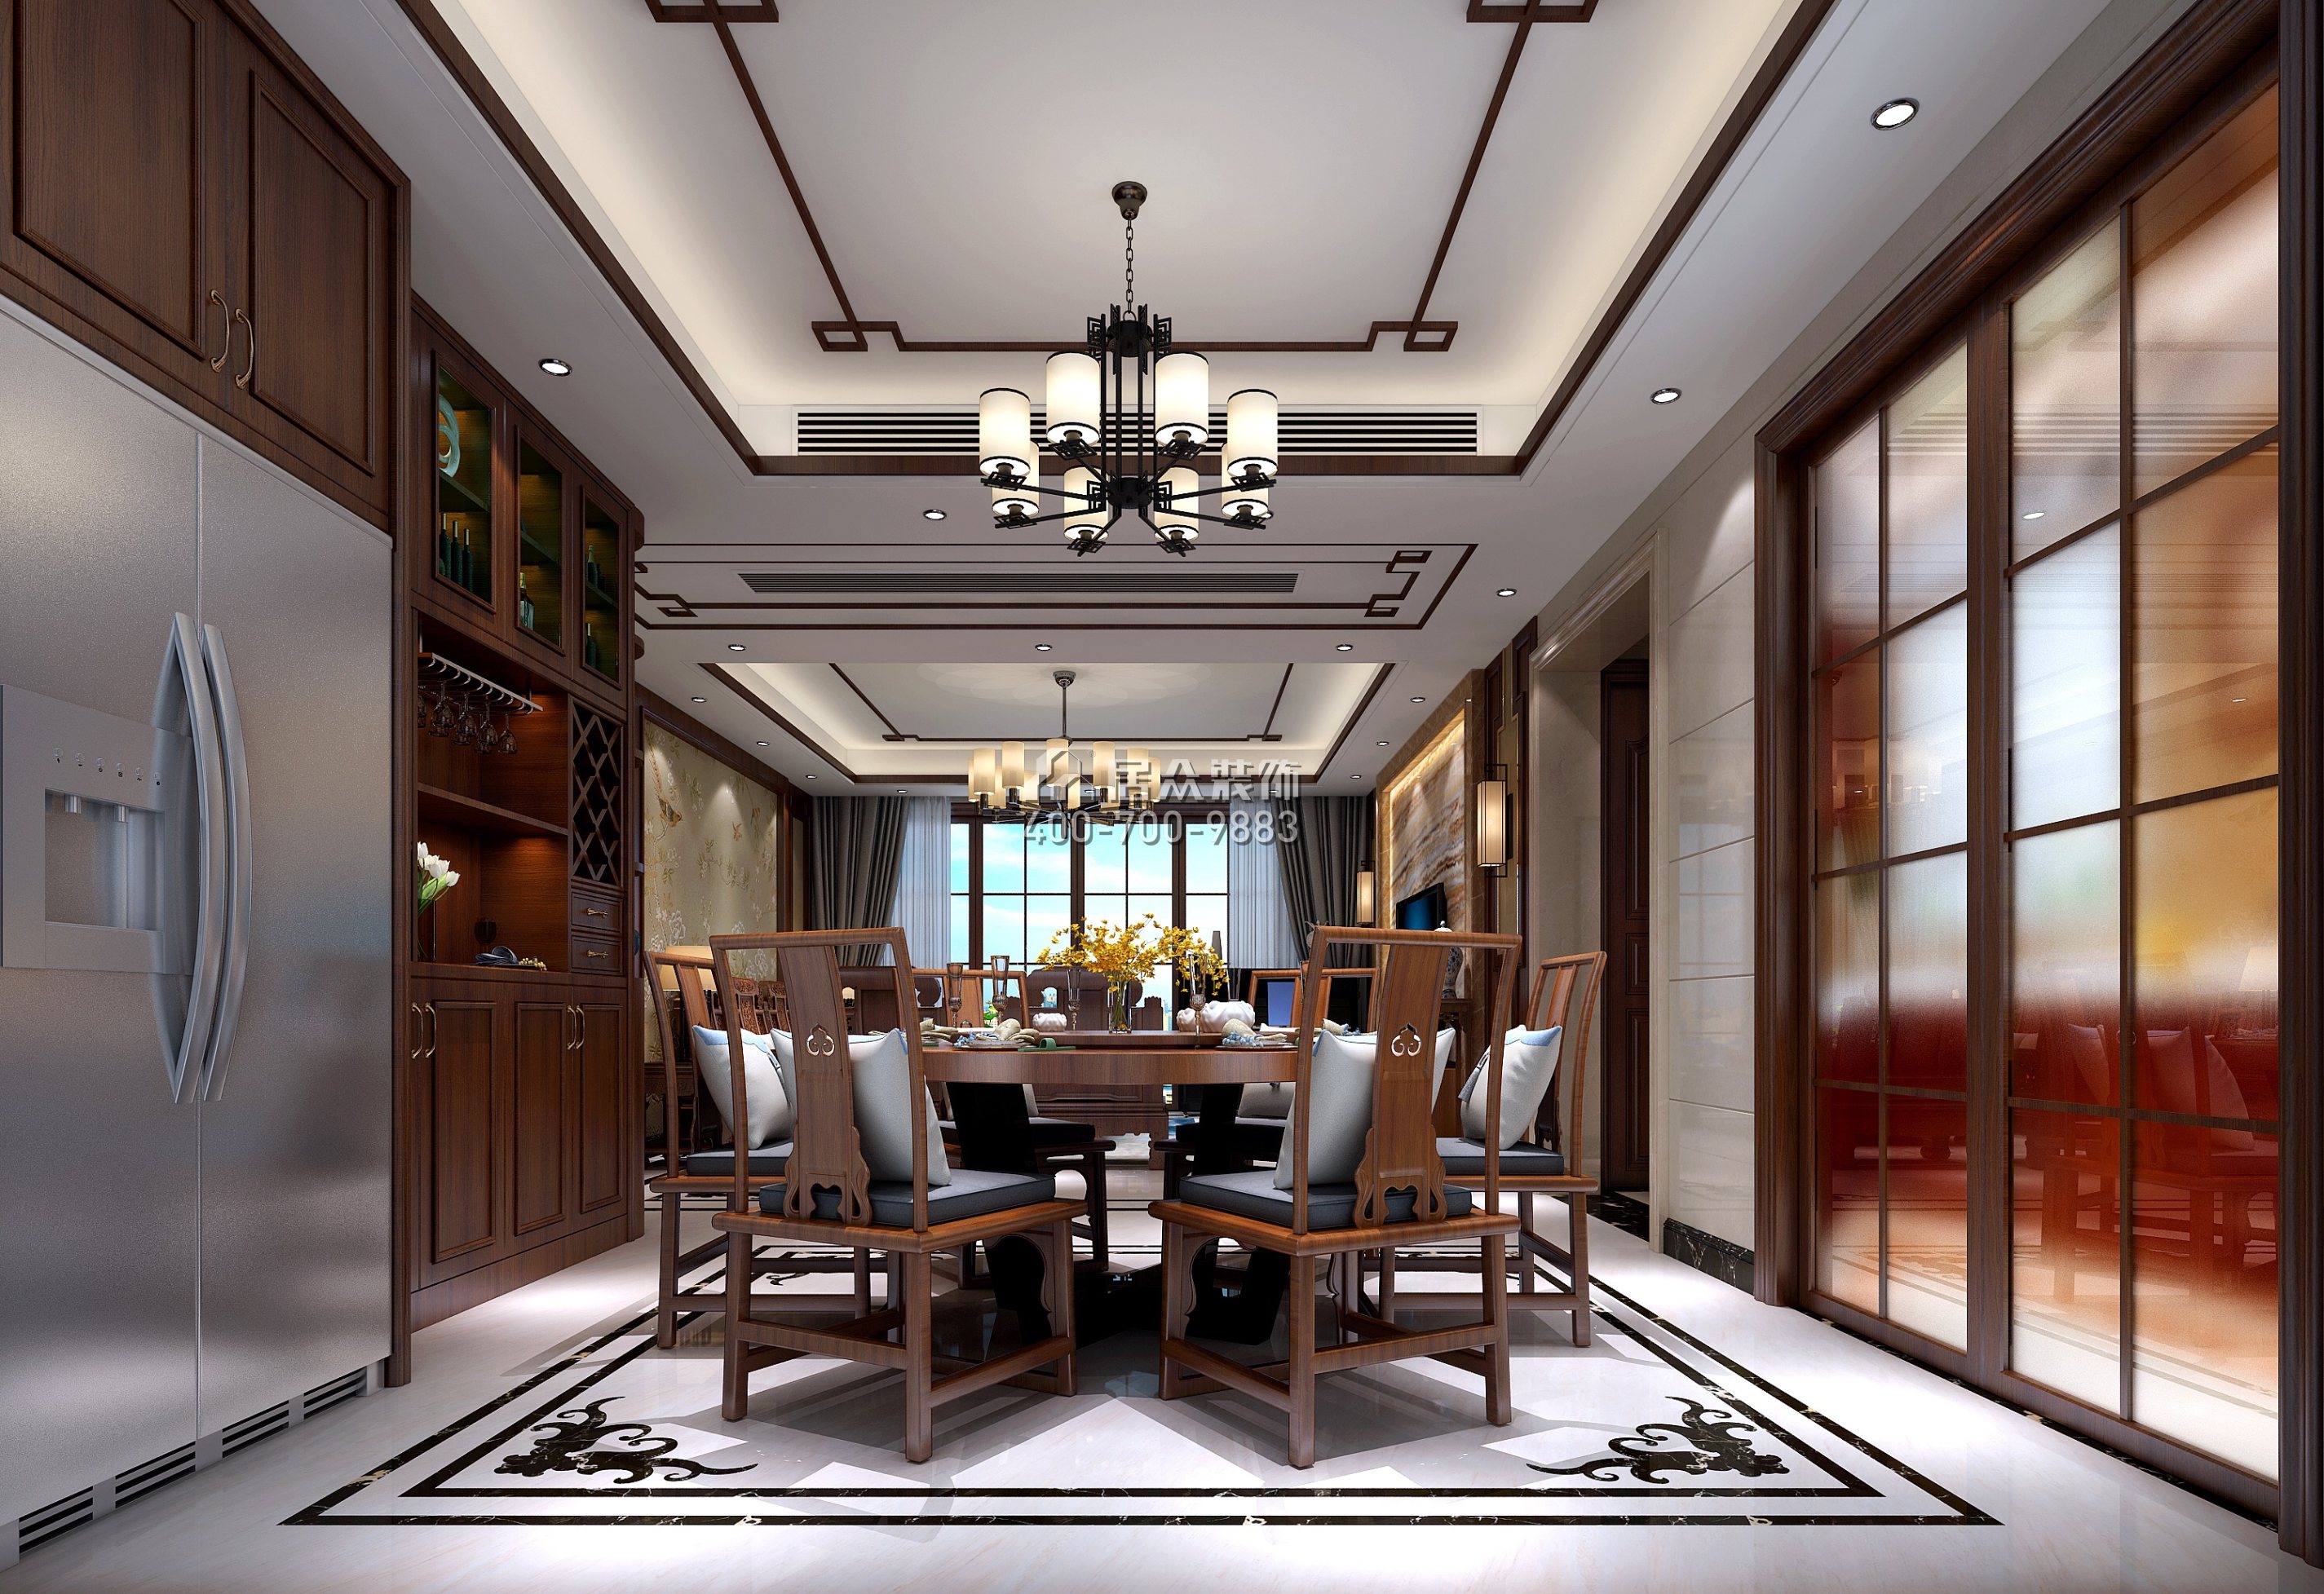 中洲湾上花园175平方米中式风格平层户型餐厅装修效果图